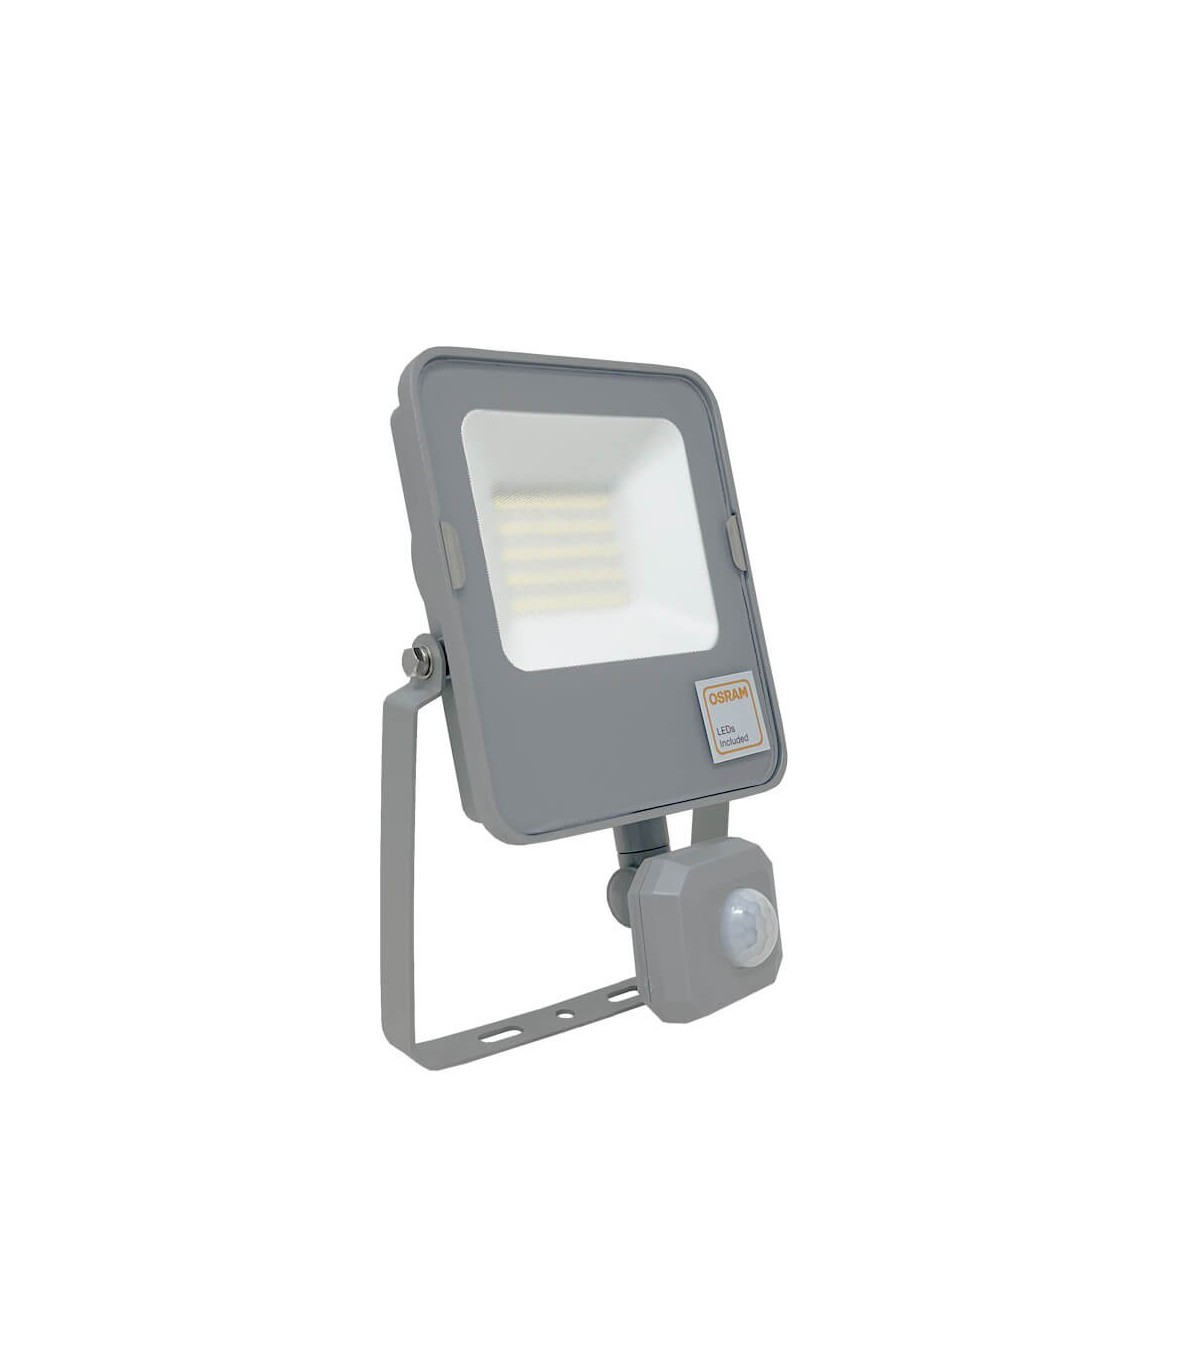 30W Blanco Frío Foco Proyector Exterior LED Detección de Movimiento PIR Sensor Resistente al agua con Sensor LED IP65 